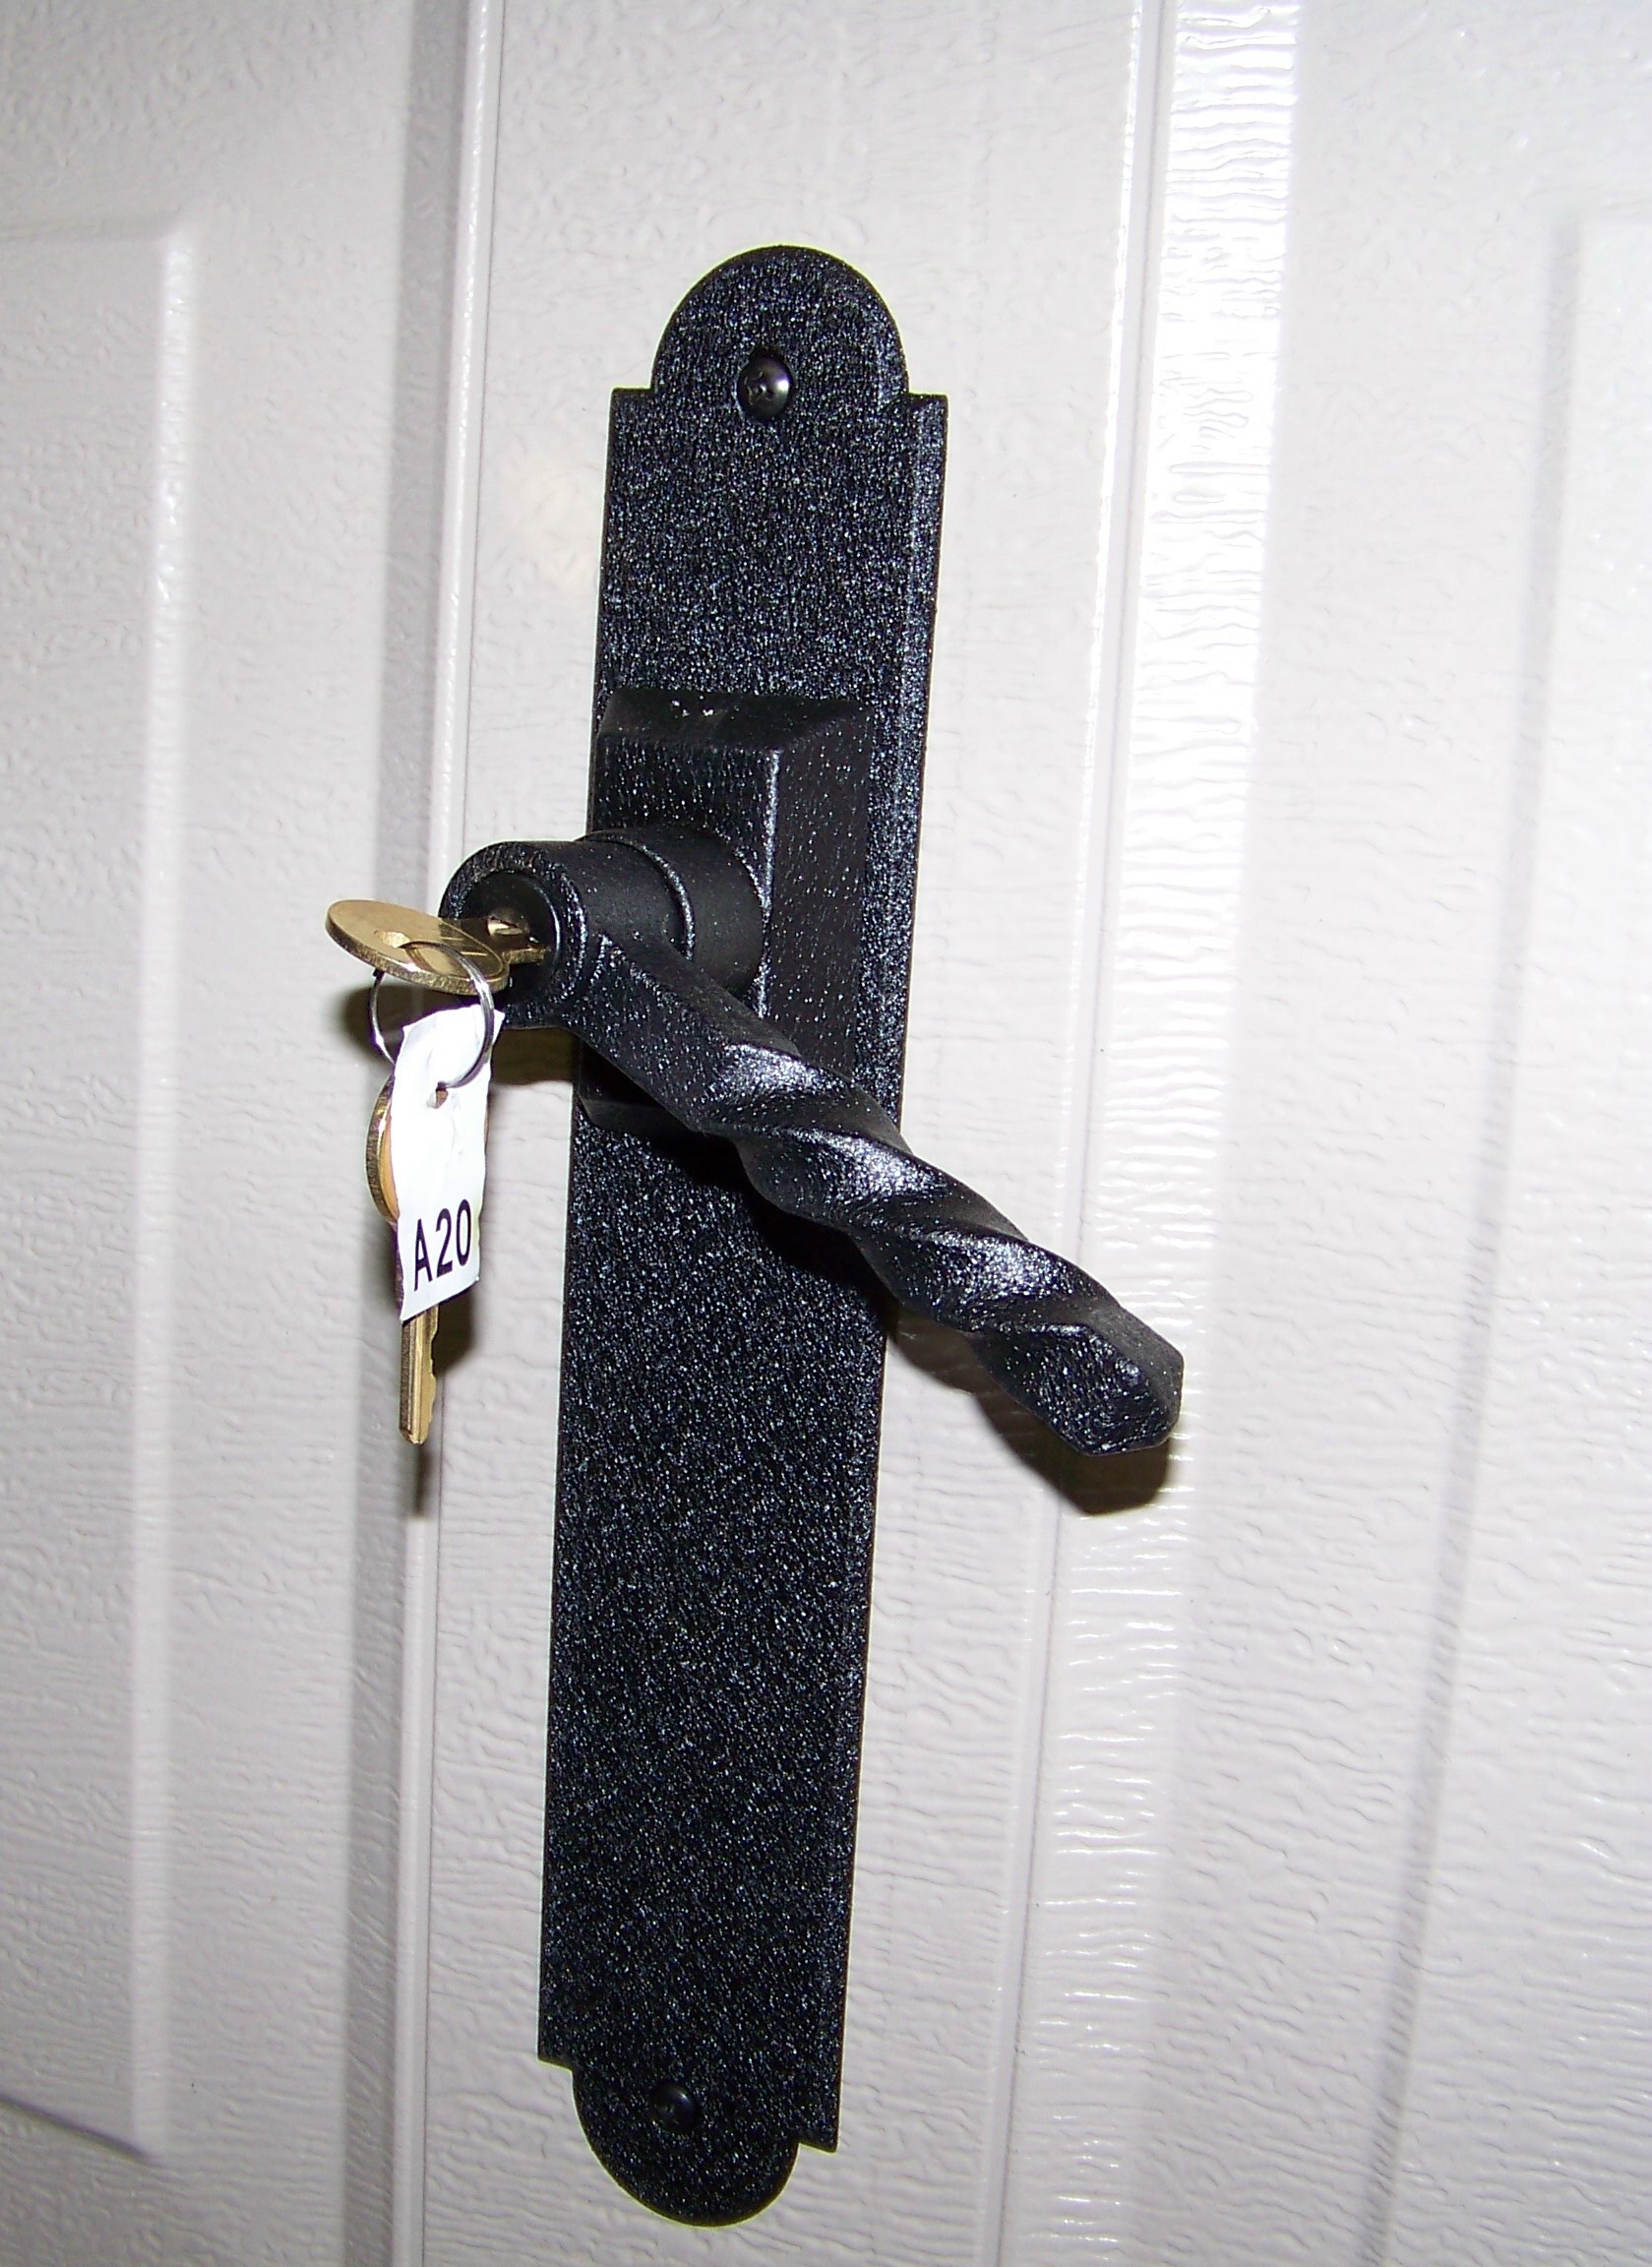 Modern Garage Door Lock Options for Simple Design